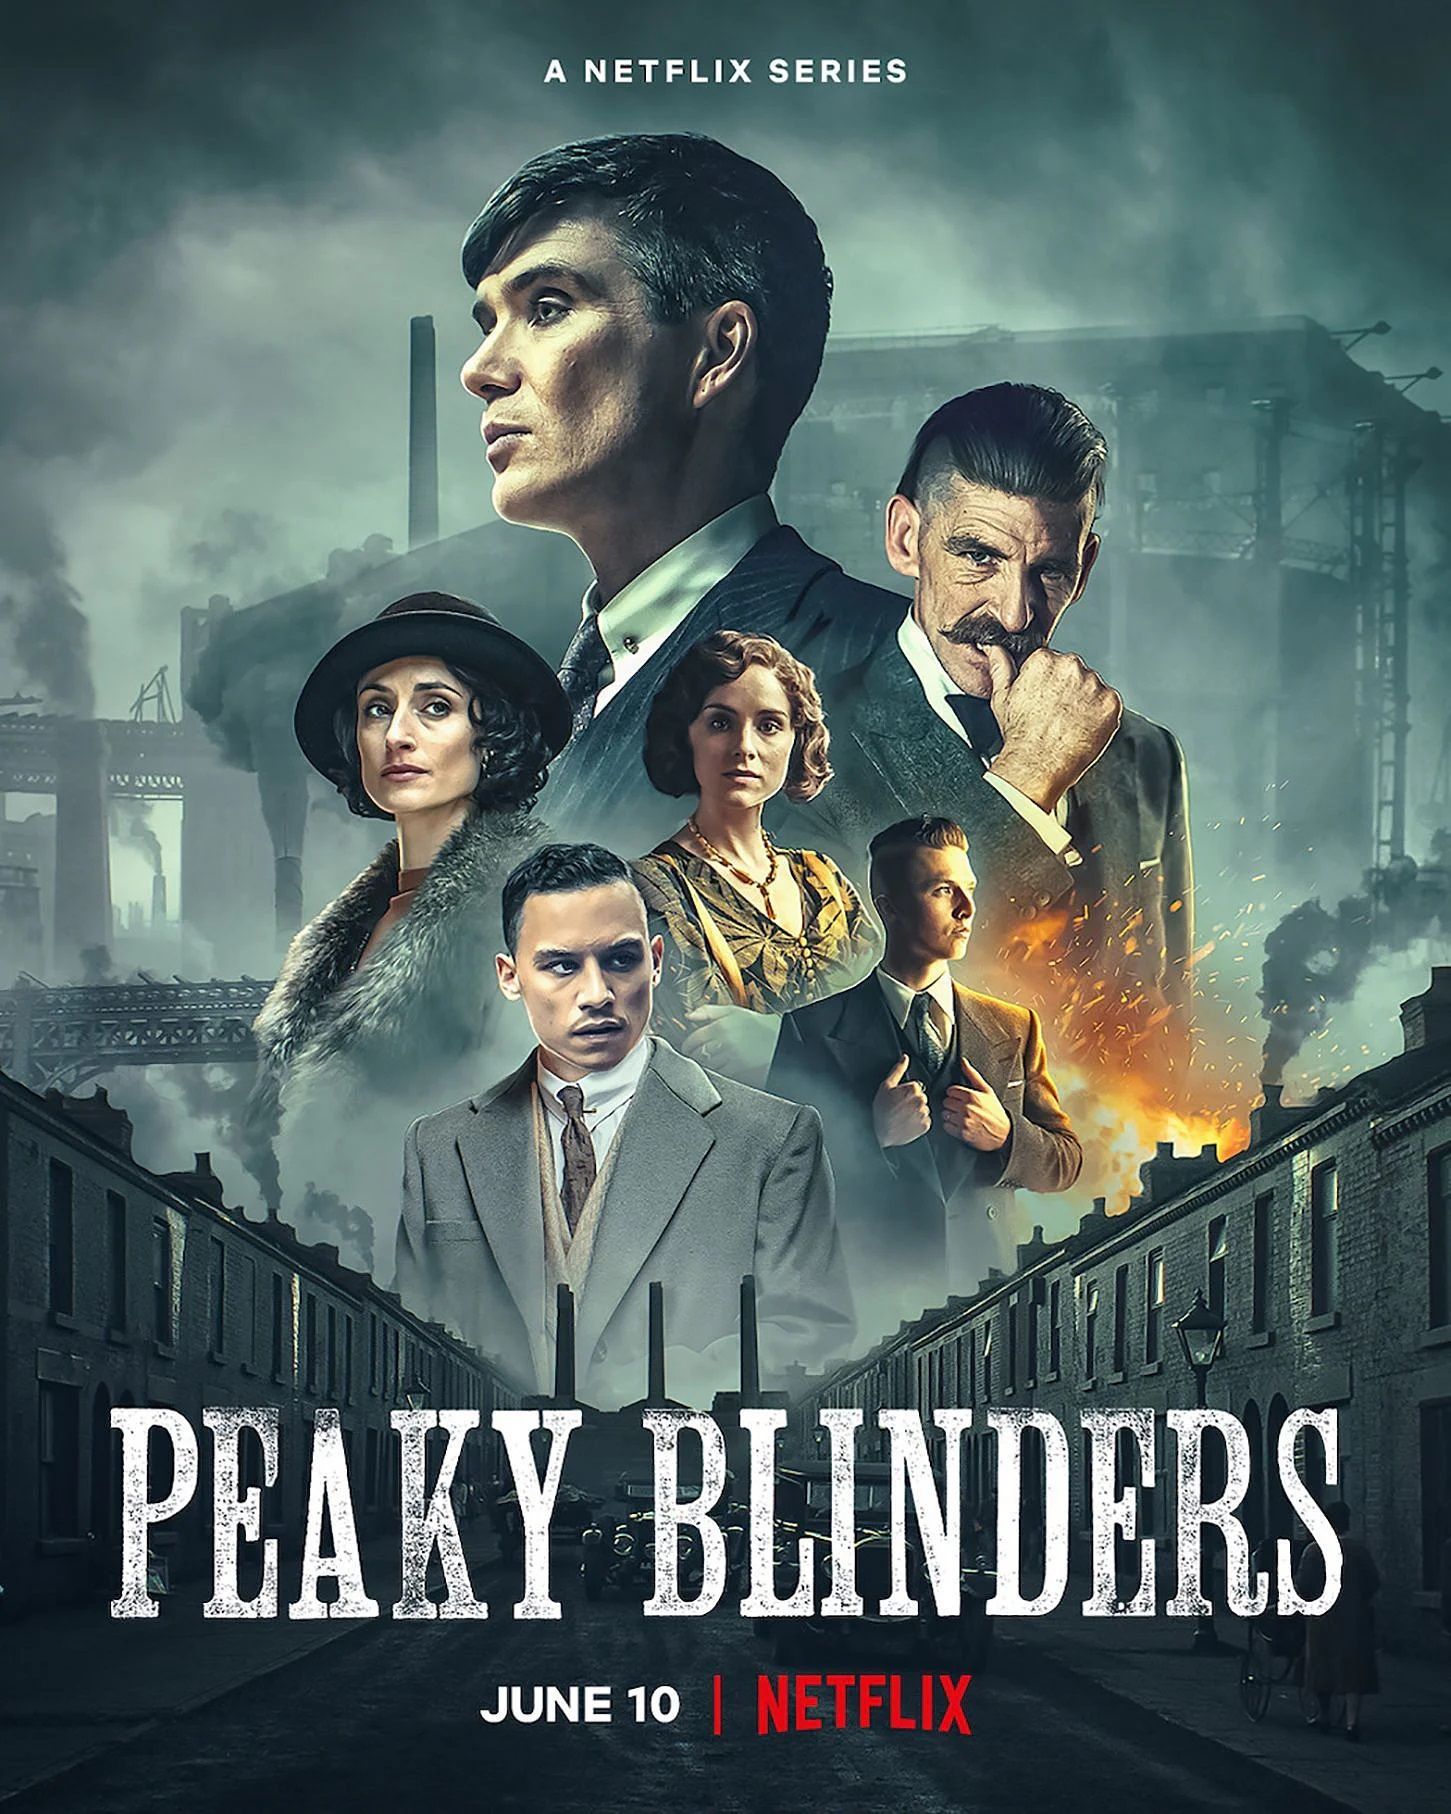 Peaky Blinders Netflix Poster